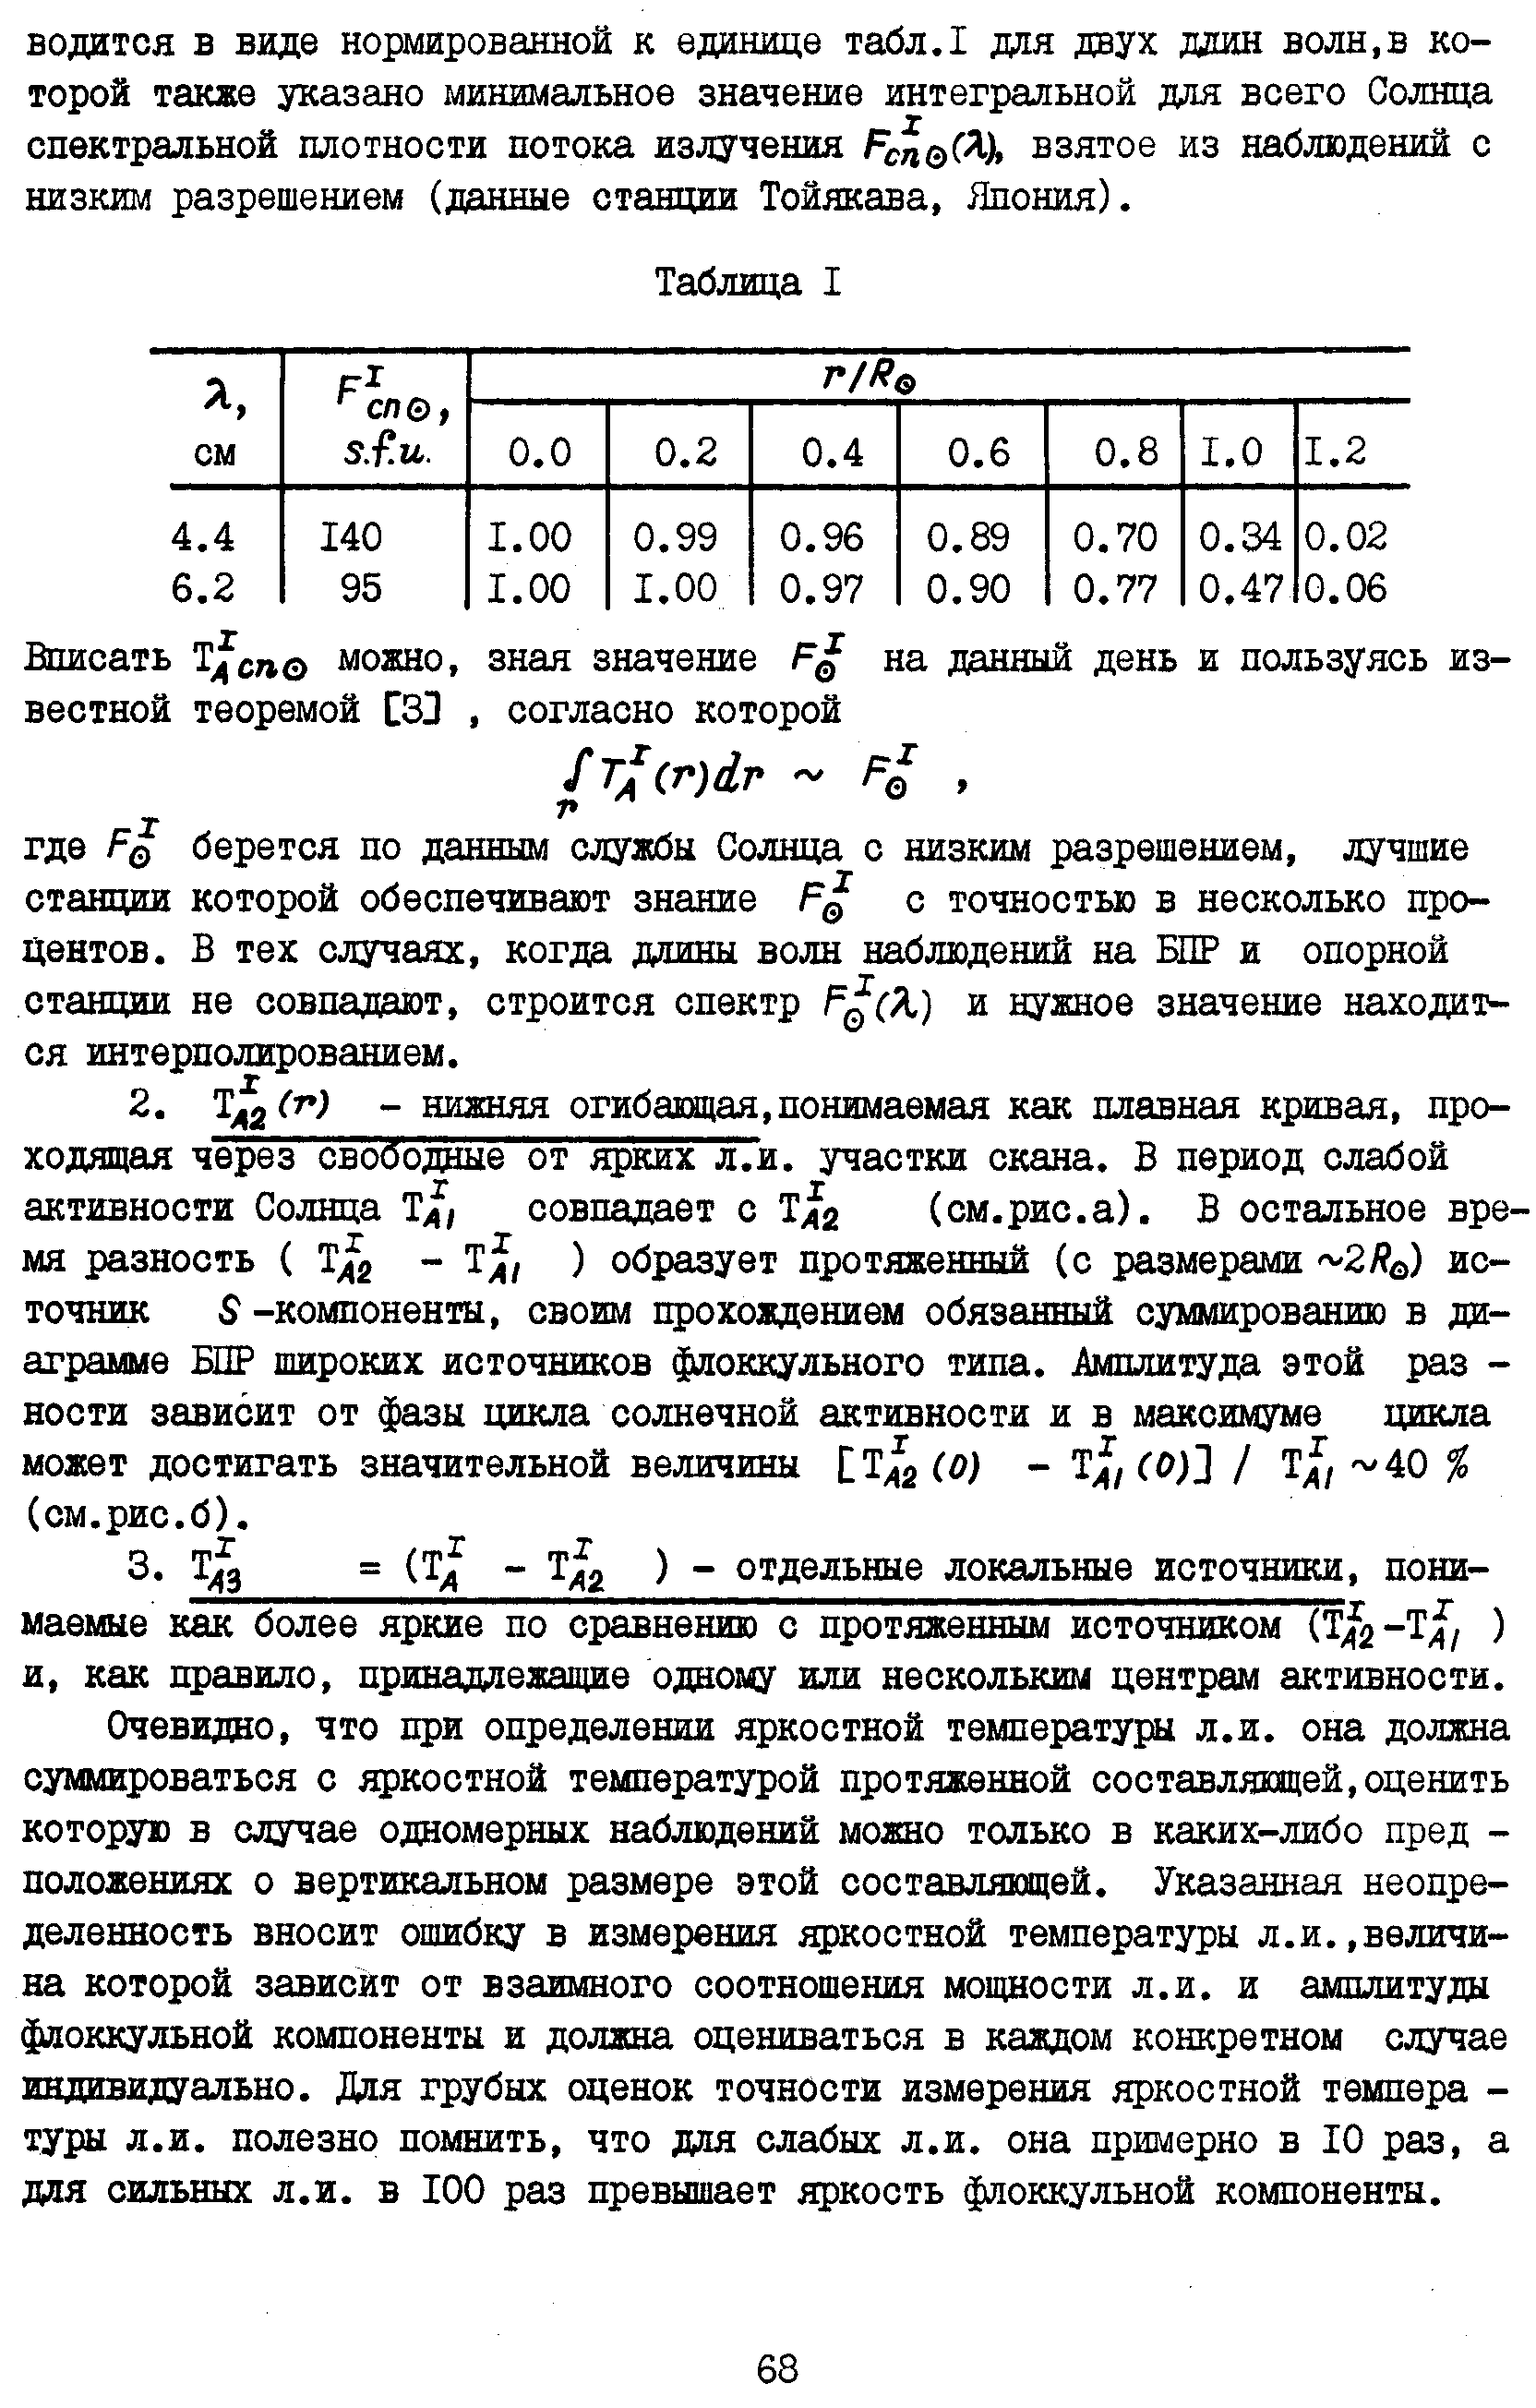 Боровик В.Н., Петерова Н.Г.,стр.3